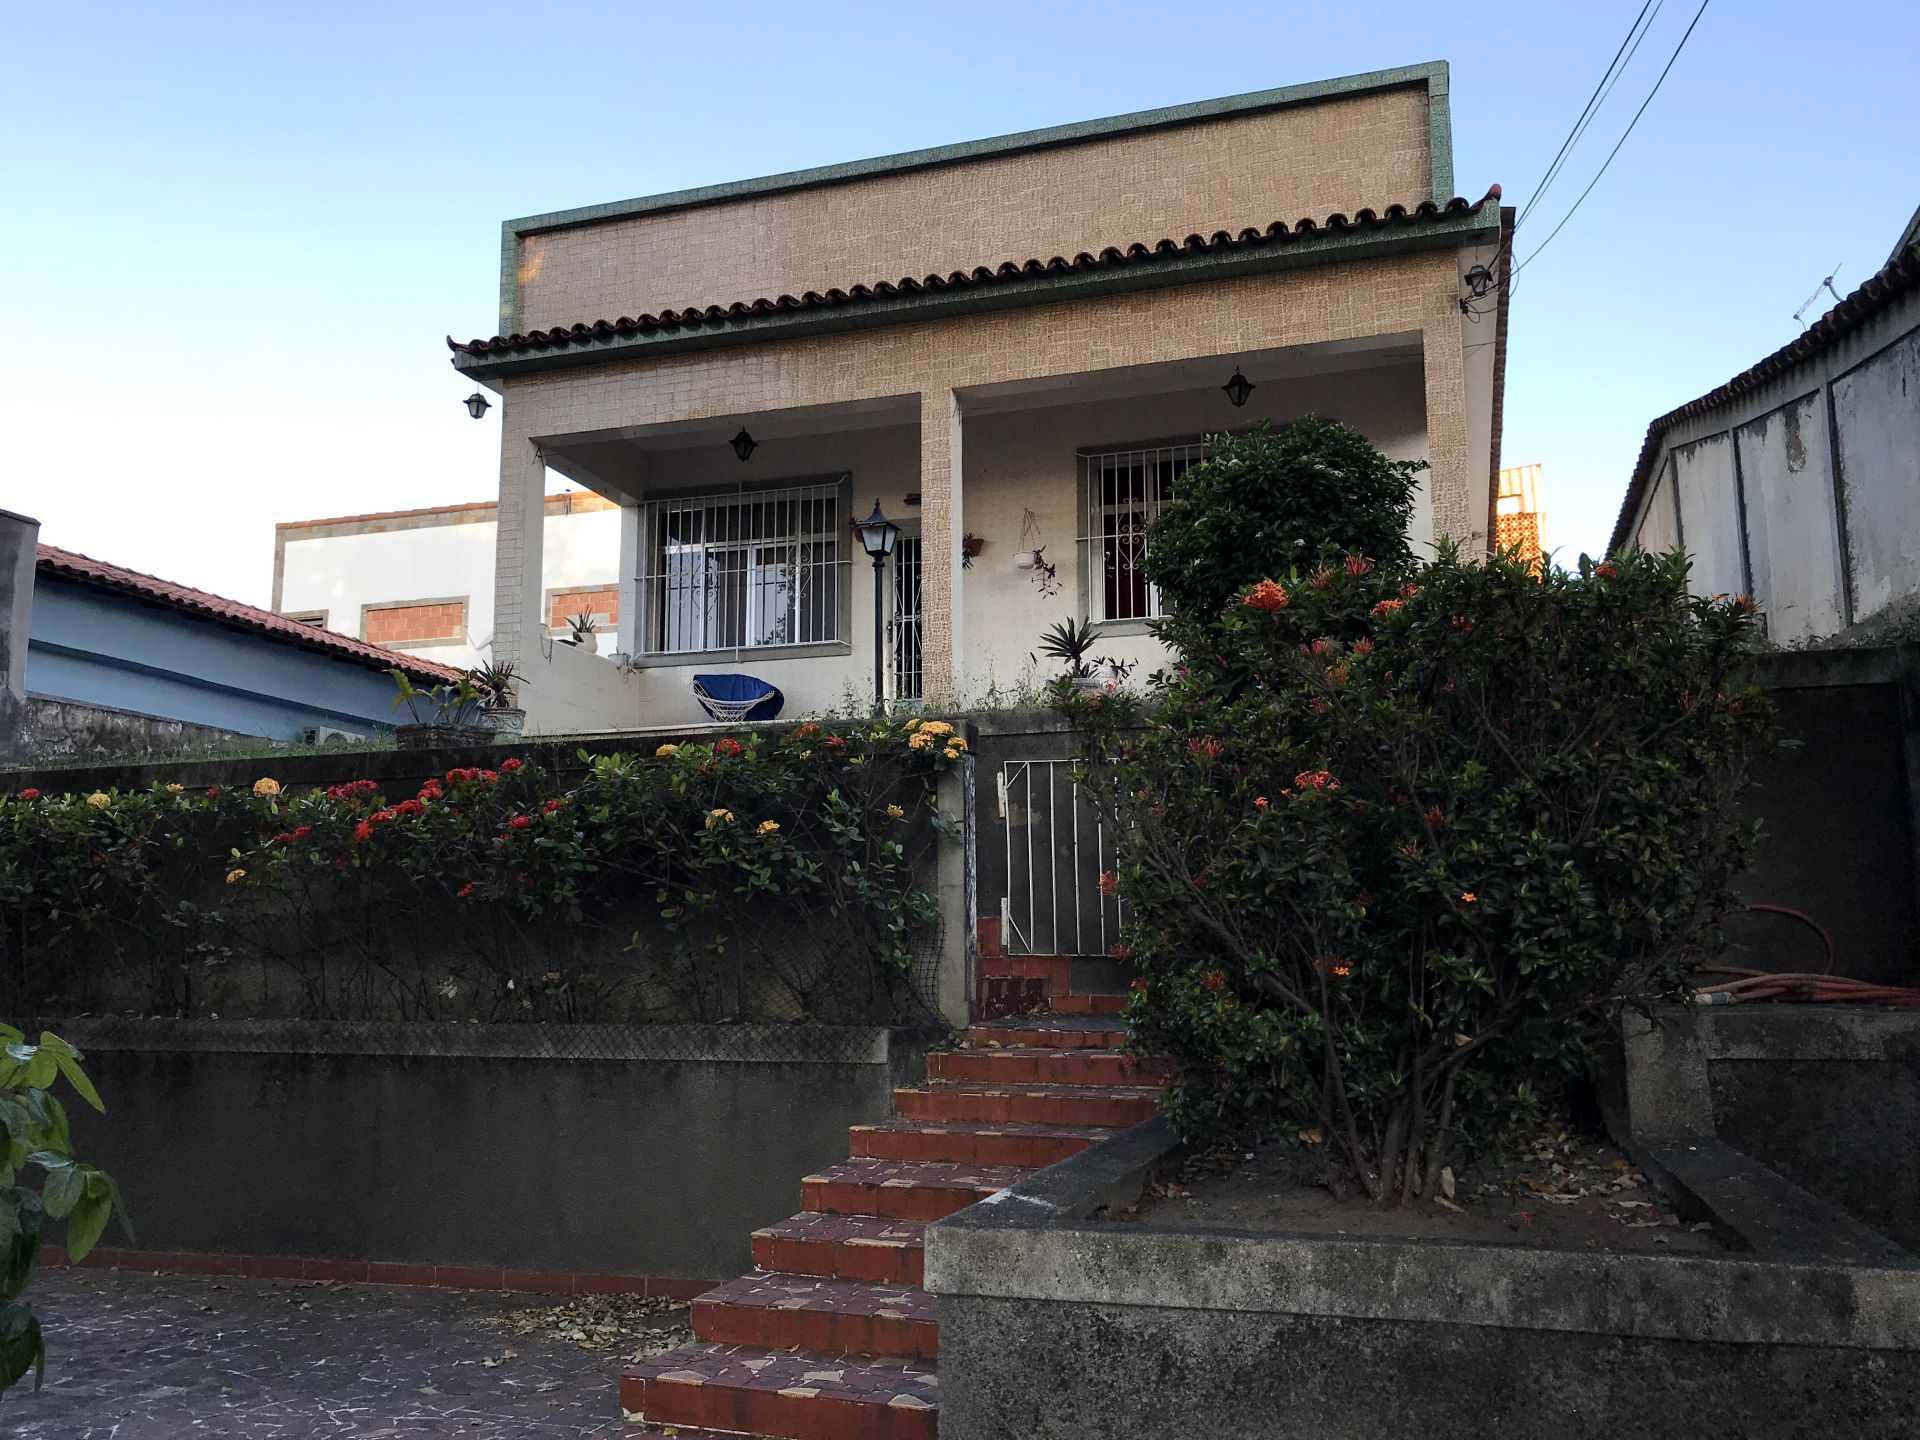 FOTO 1 - Casa 3 quartos à venda Vila Valqueire, Rio de Janeiro - R$ 890.000 - RF269 - 1